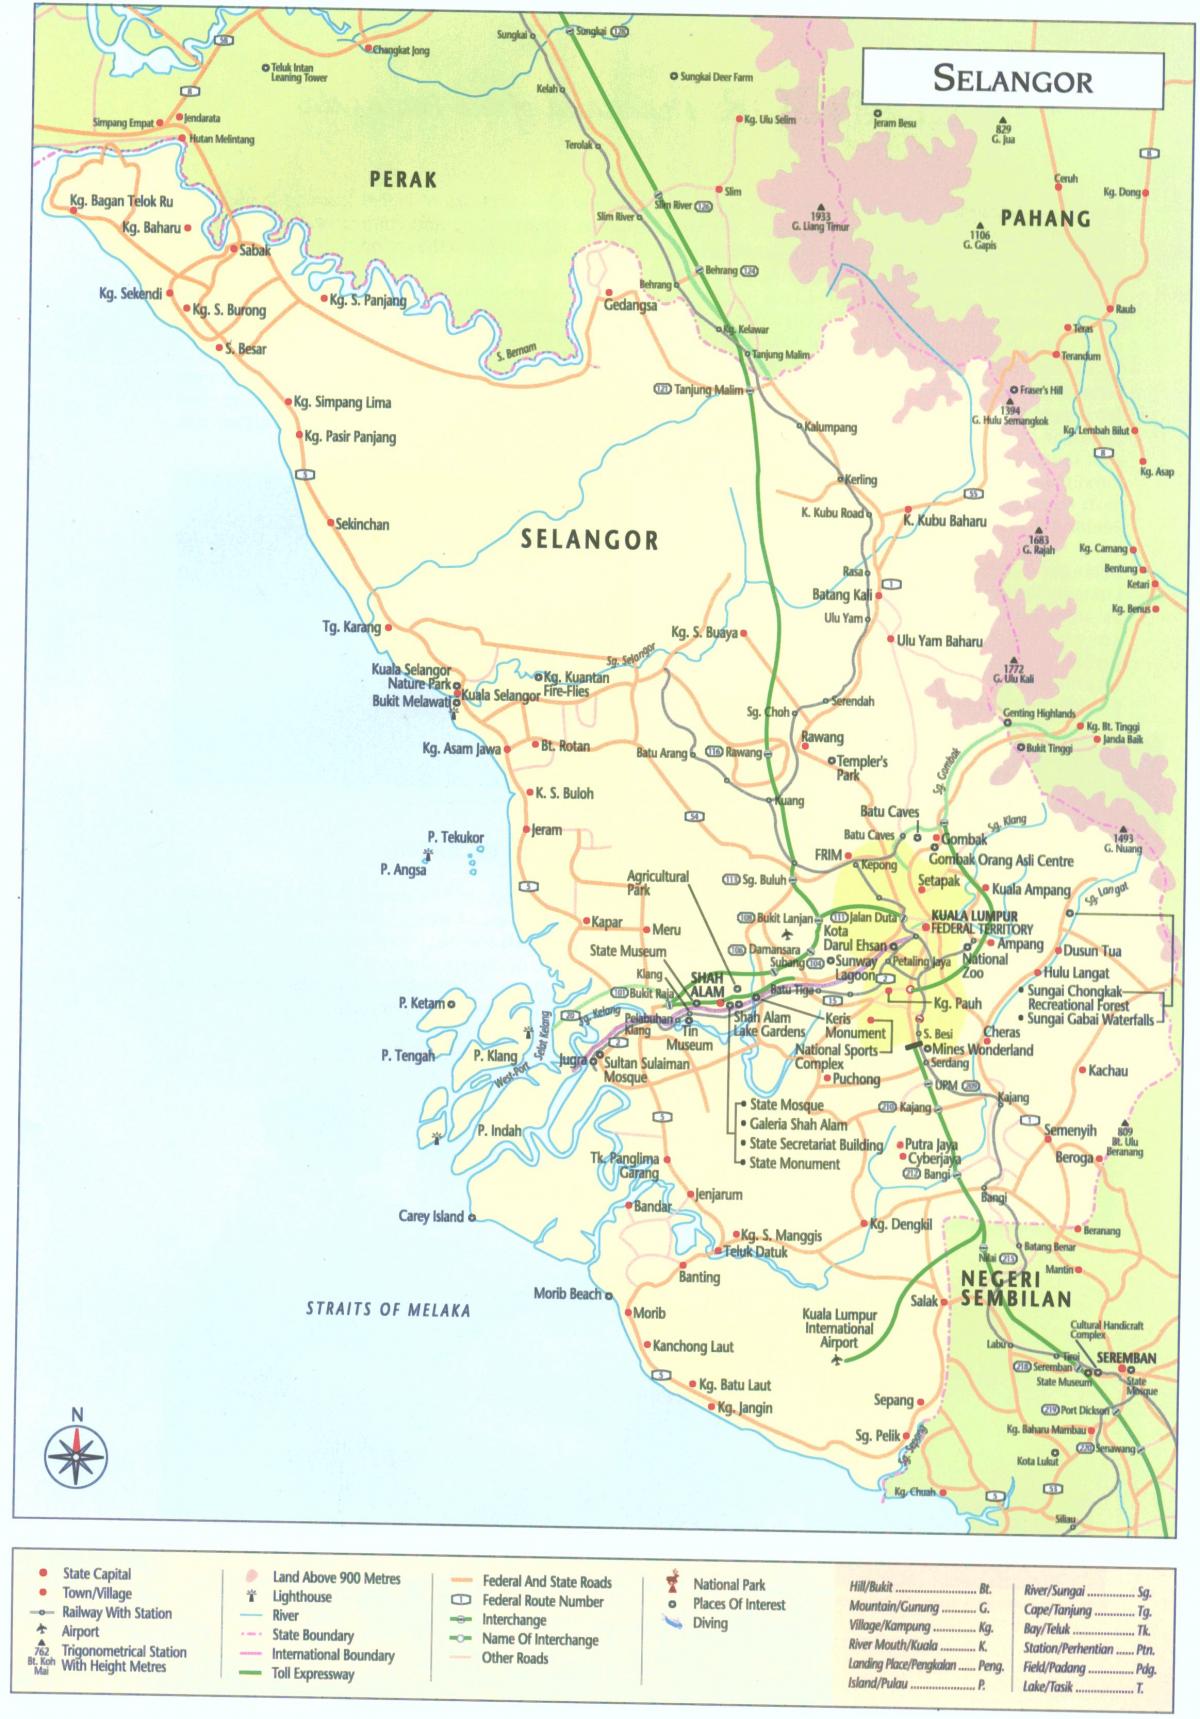 कुआलालंपुर, selangor नक्शा